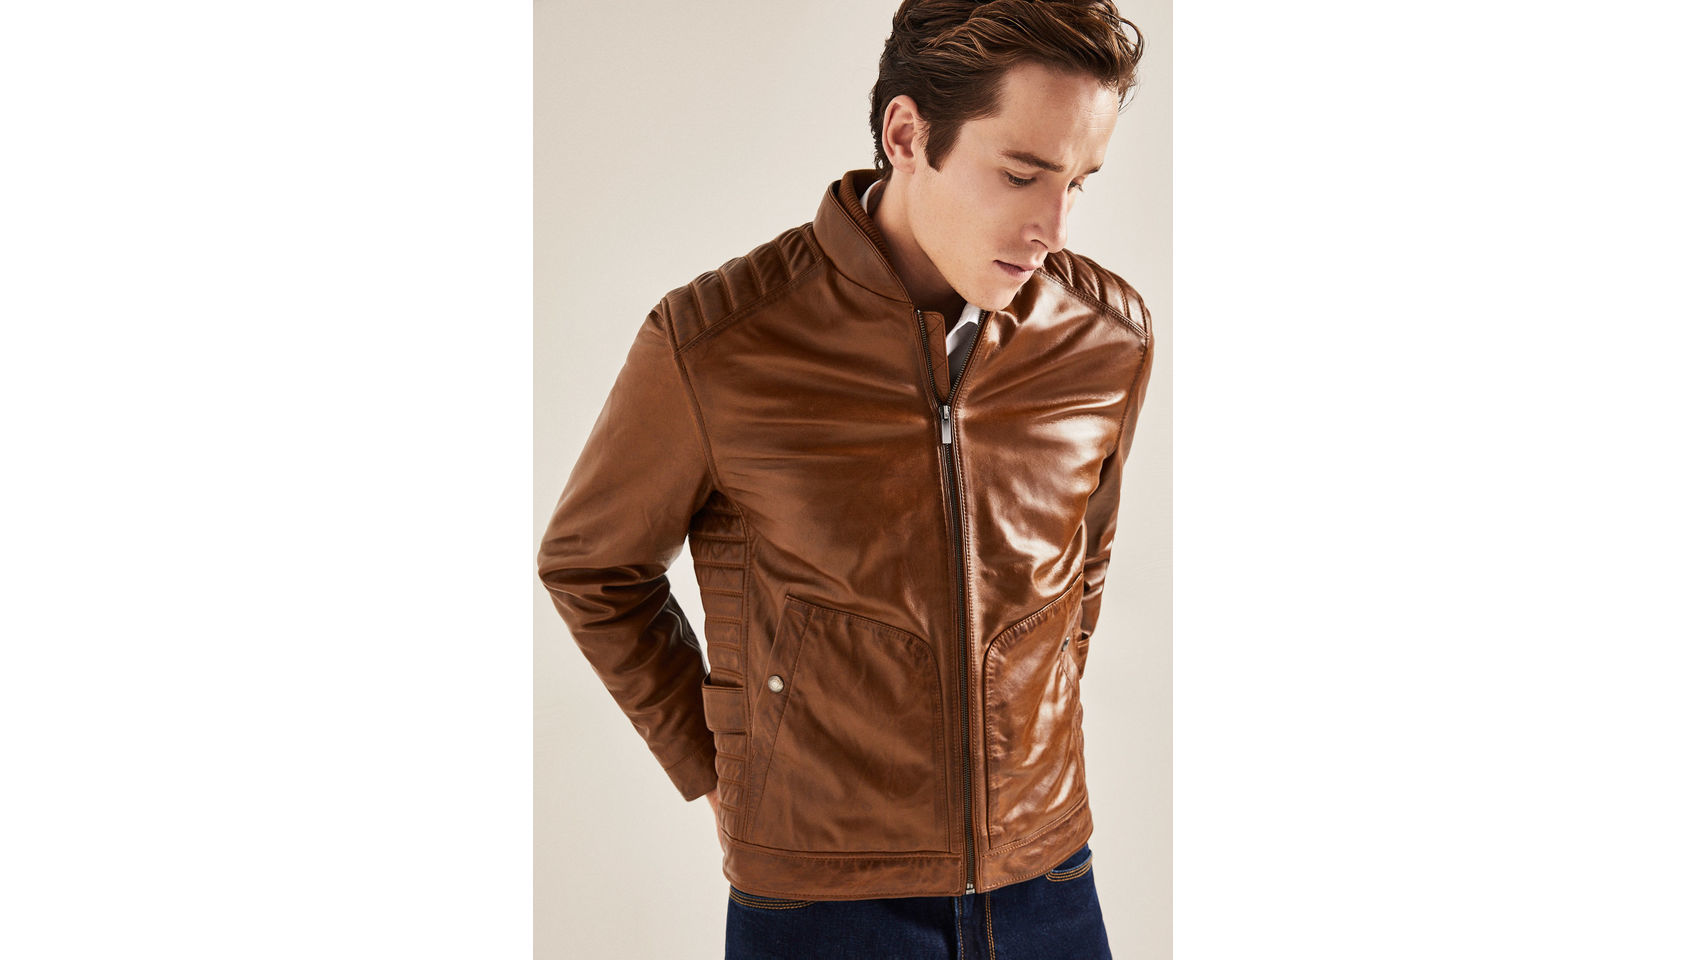 Piel, borrego y corte clásico: las nuevas tendencias en chaqueta de hombre